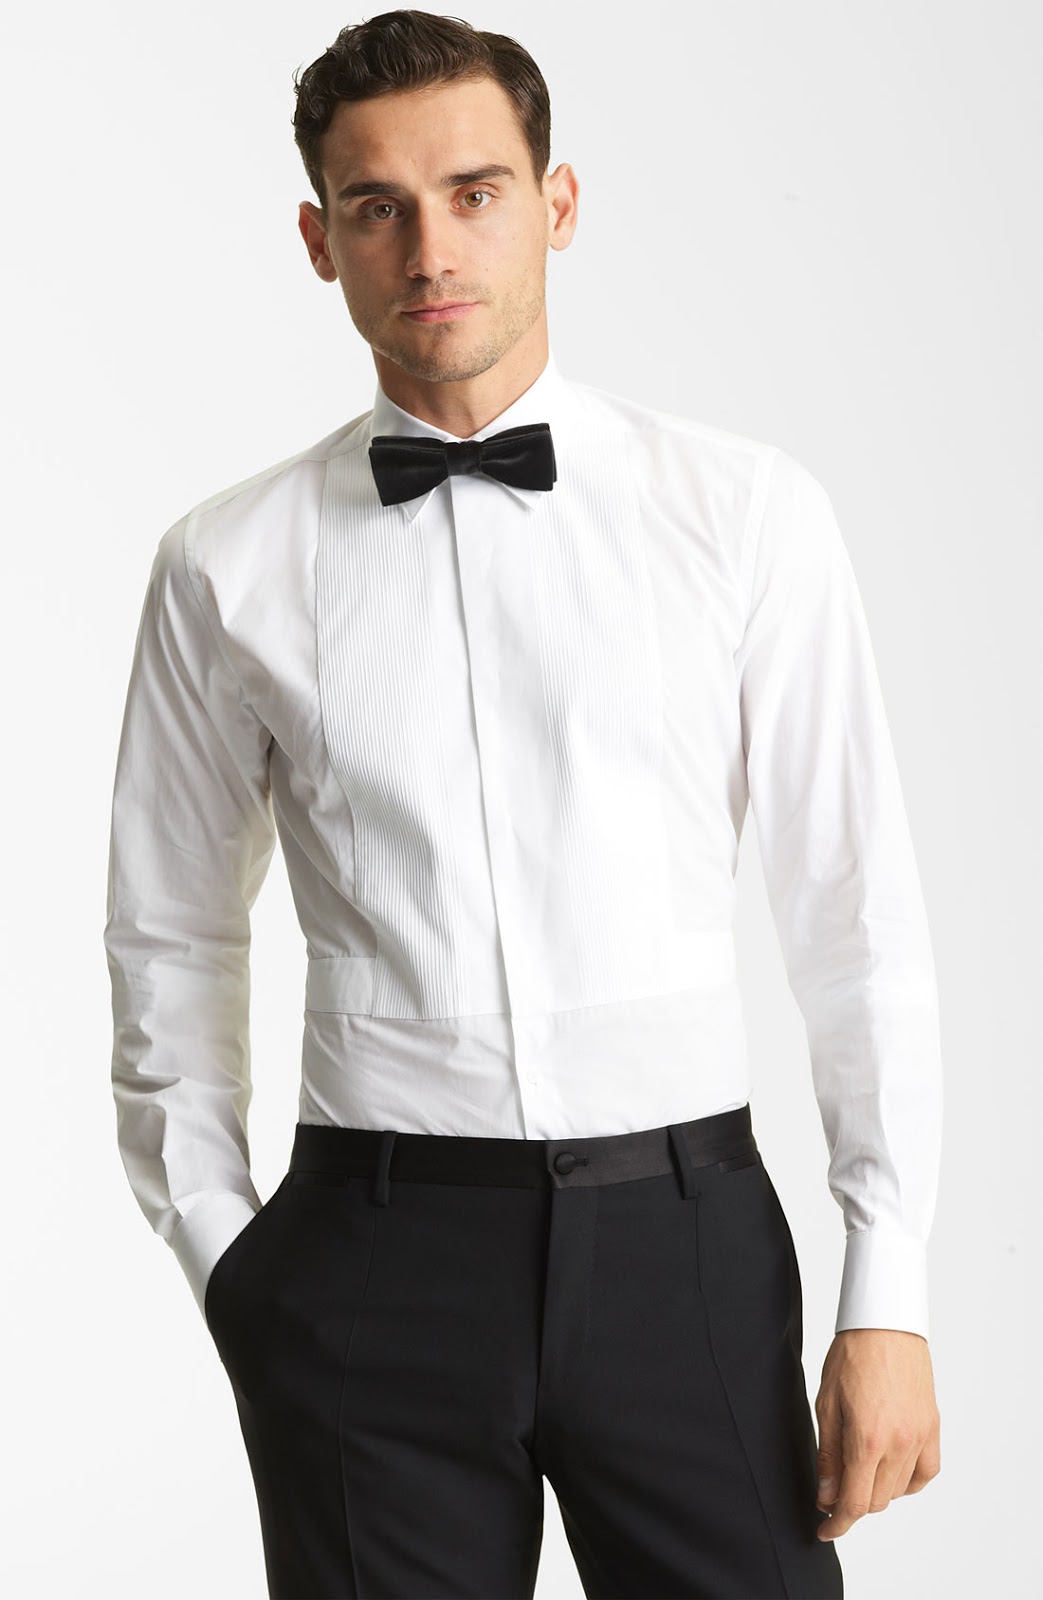 Dolce&Gabbana Tuxedo Shirt - Fashion Groom